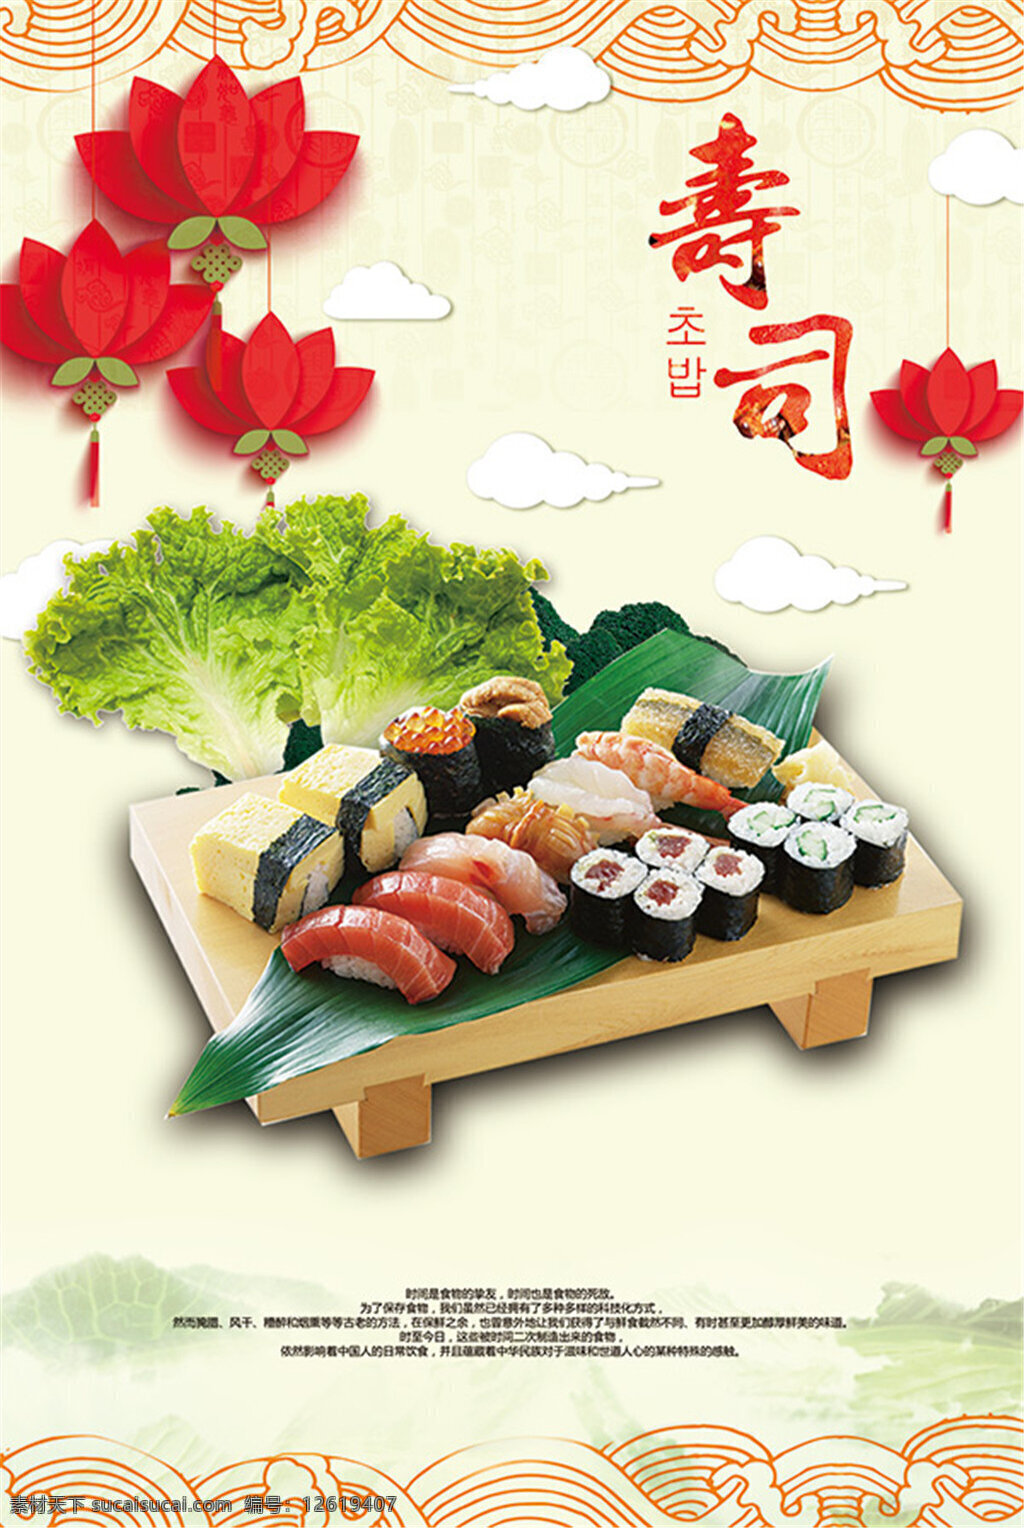 寿司美食海报 食 海报 美食漫画 广告海报设计 手绘 pop 美食招贴 美食宣传 美食海报 菜单设计 美食展板 餐饮文化